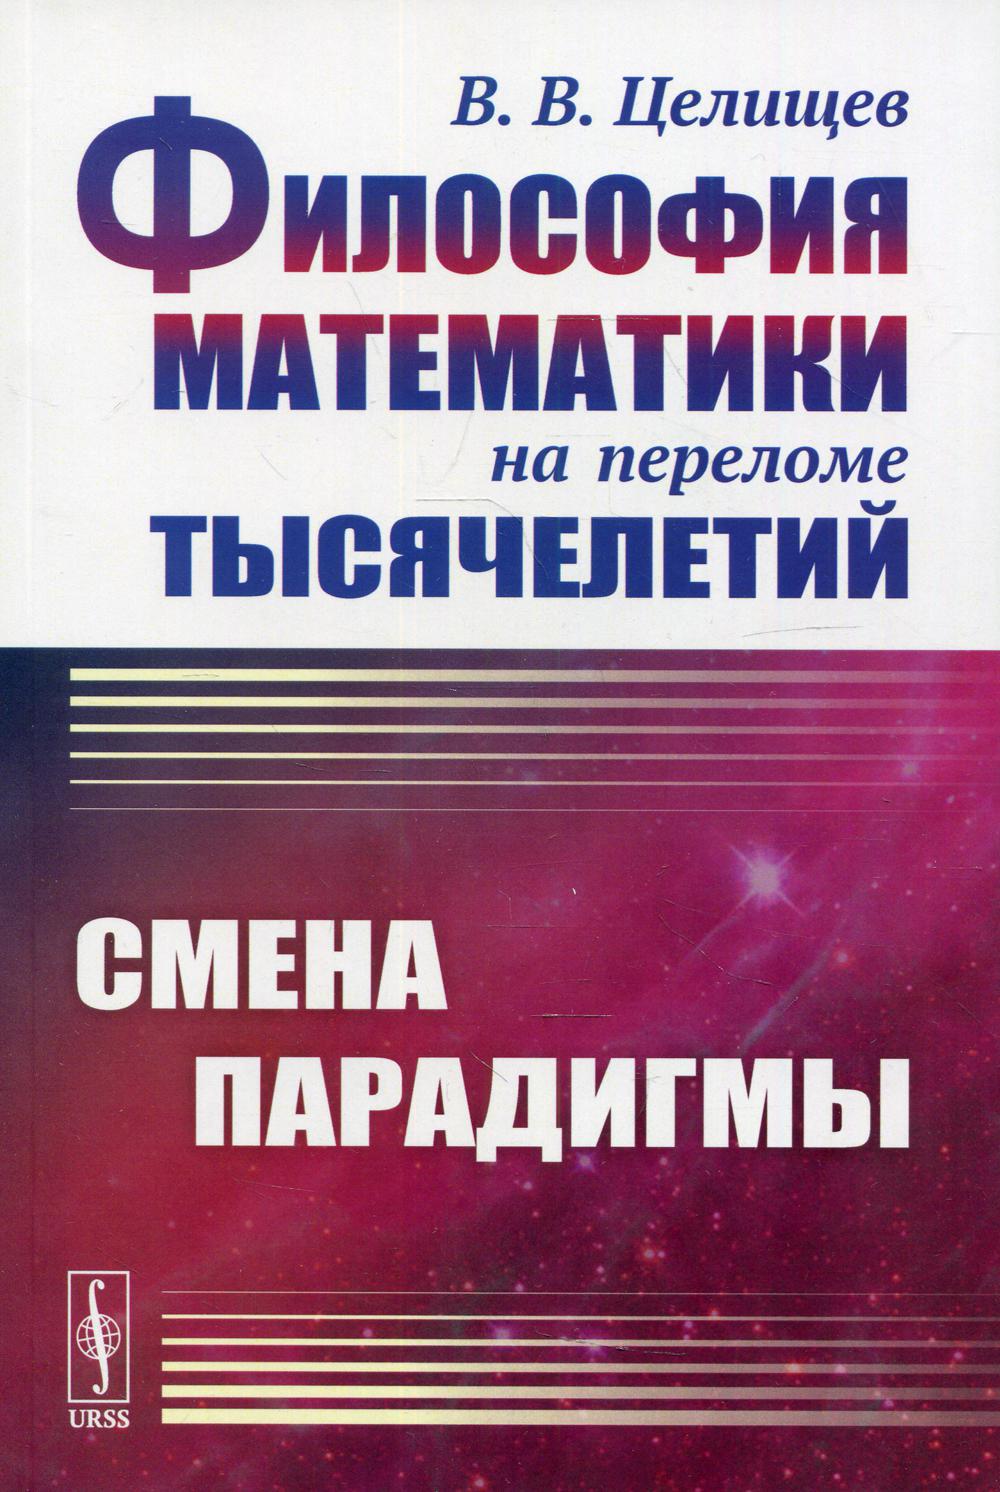 

Философия математики на переломе тысячелетий: Смена парадигмы 2-е изд., испр.